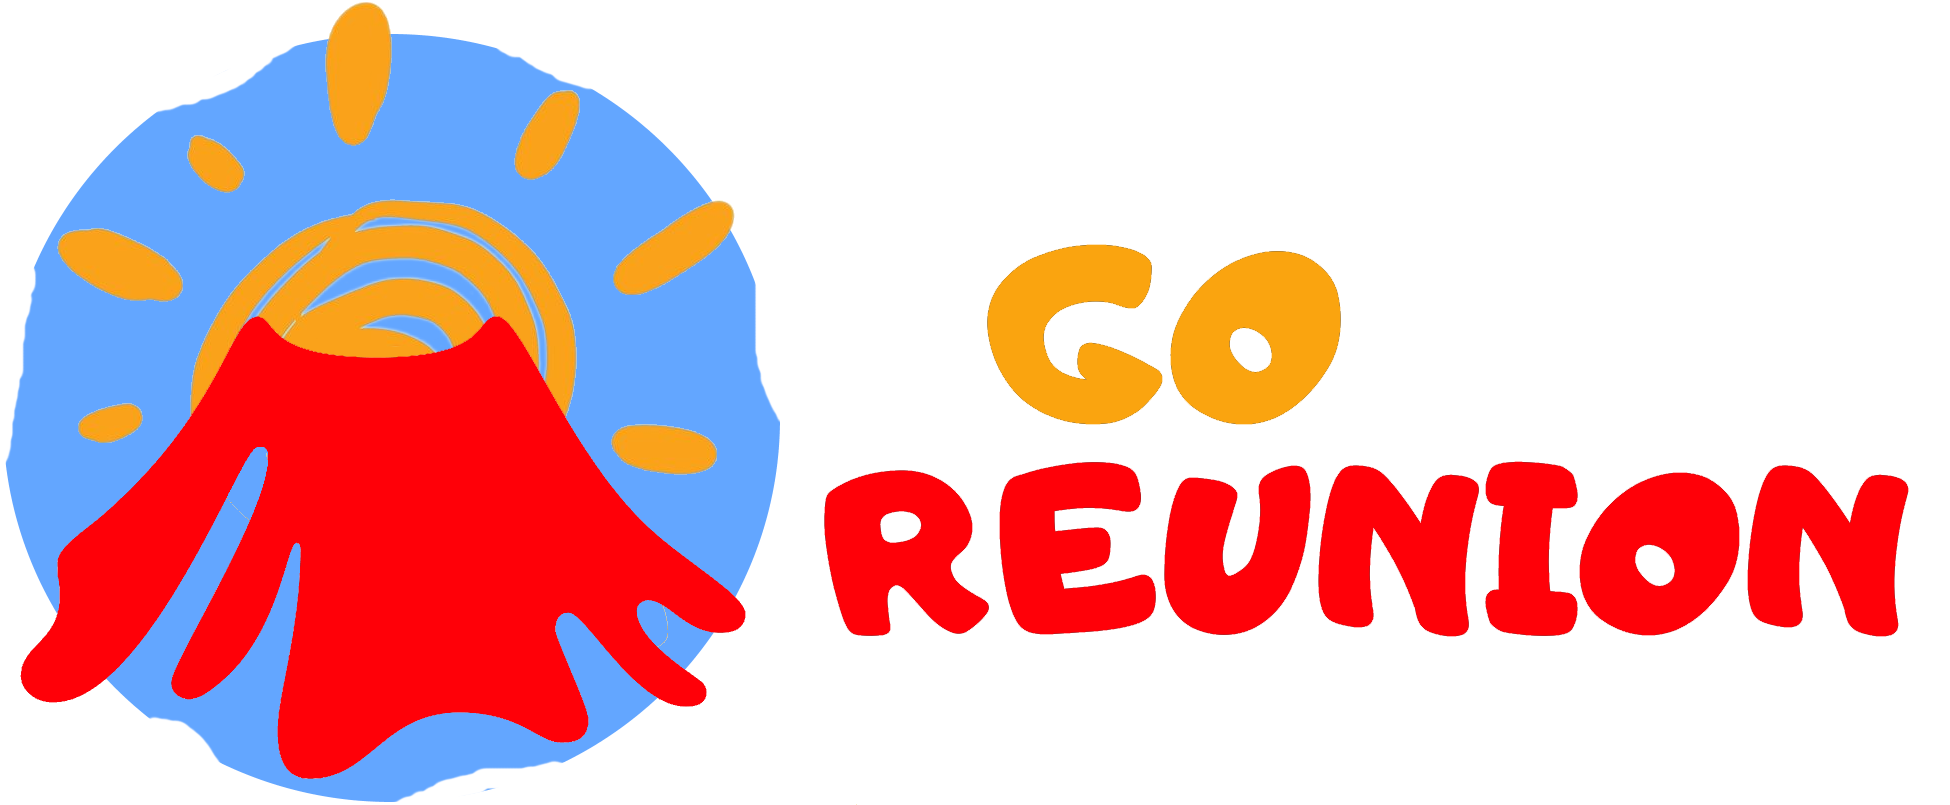 Go Réunion